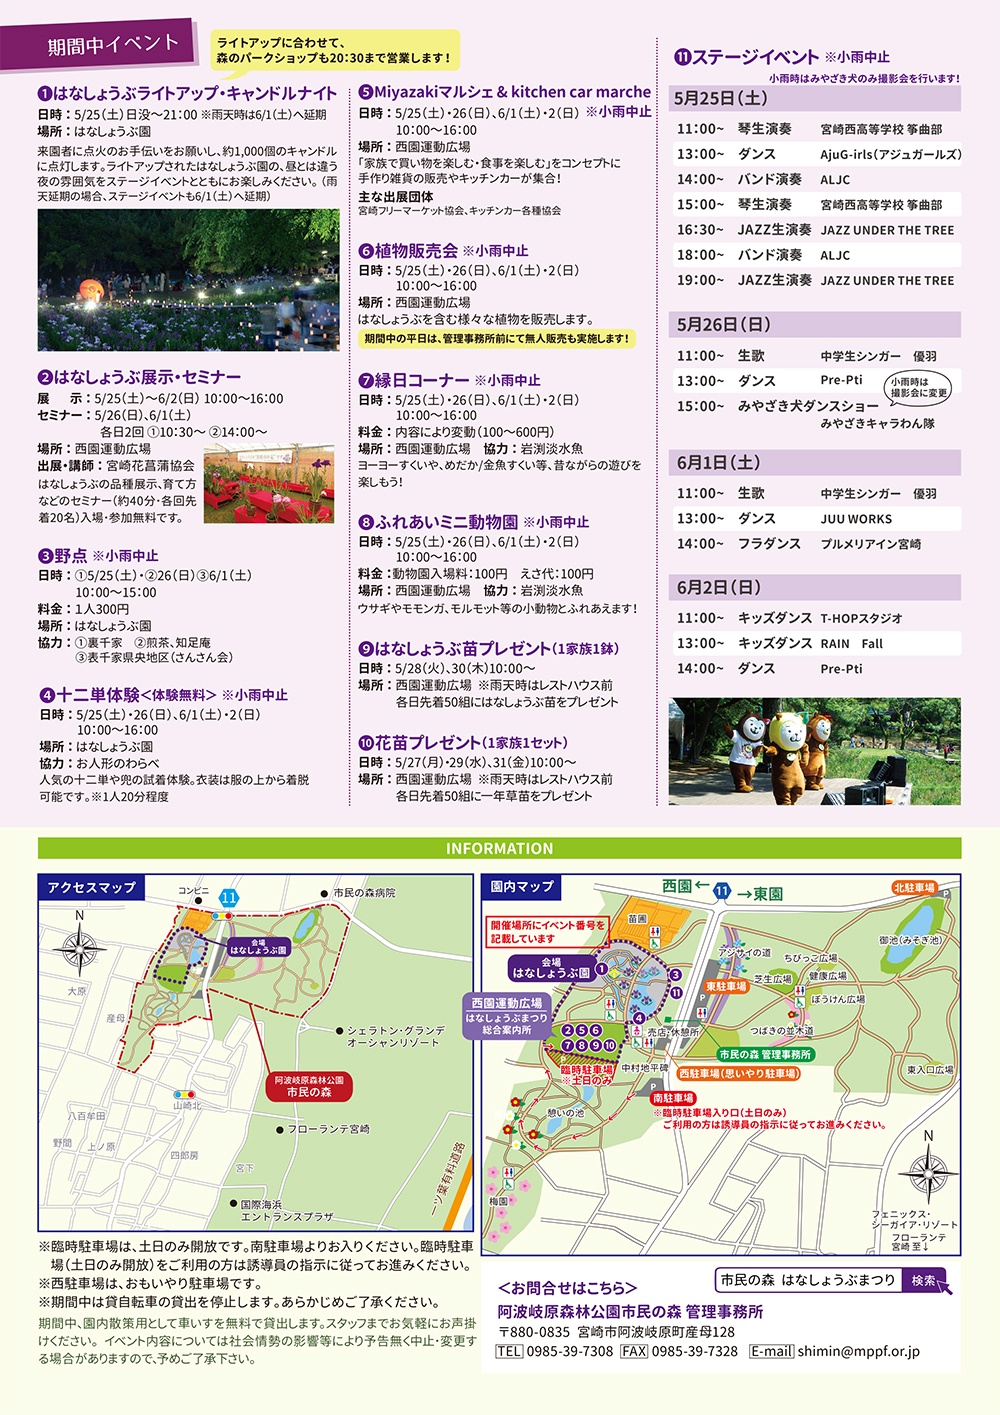 宮崎市イベント 阿波岐原森林公園 市民の森 第47回 はなしょうぶまつり 画像9